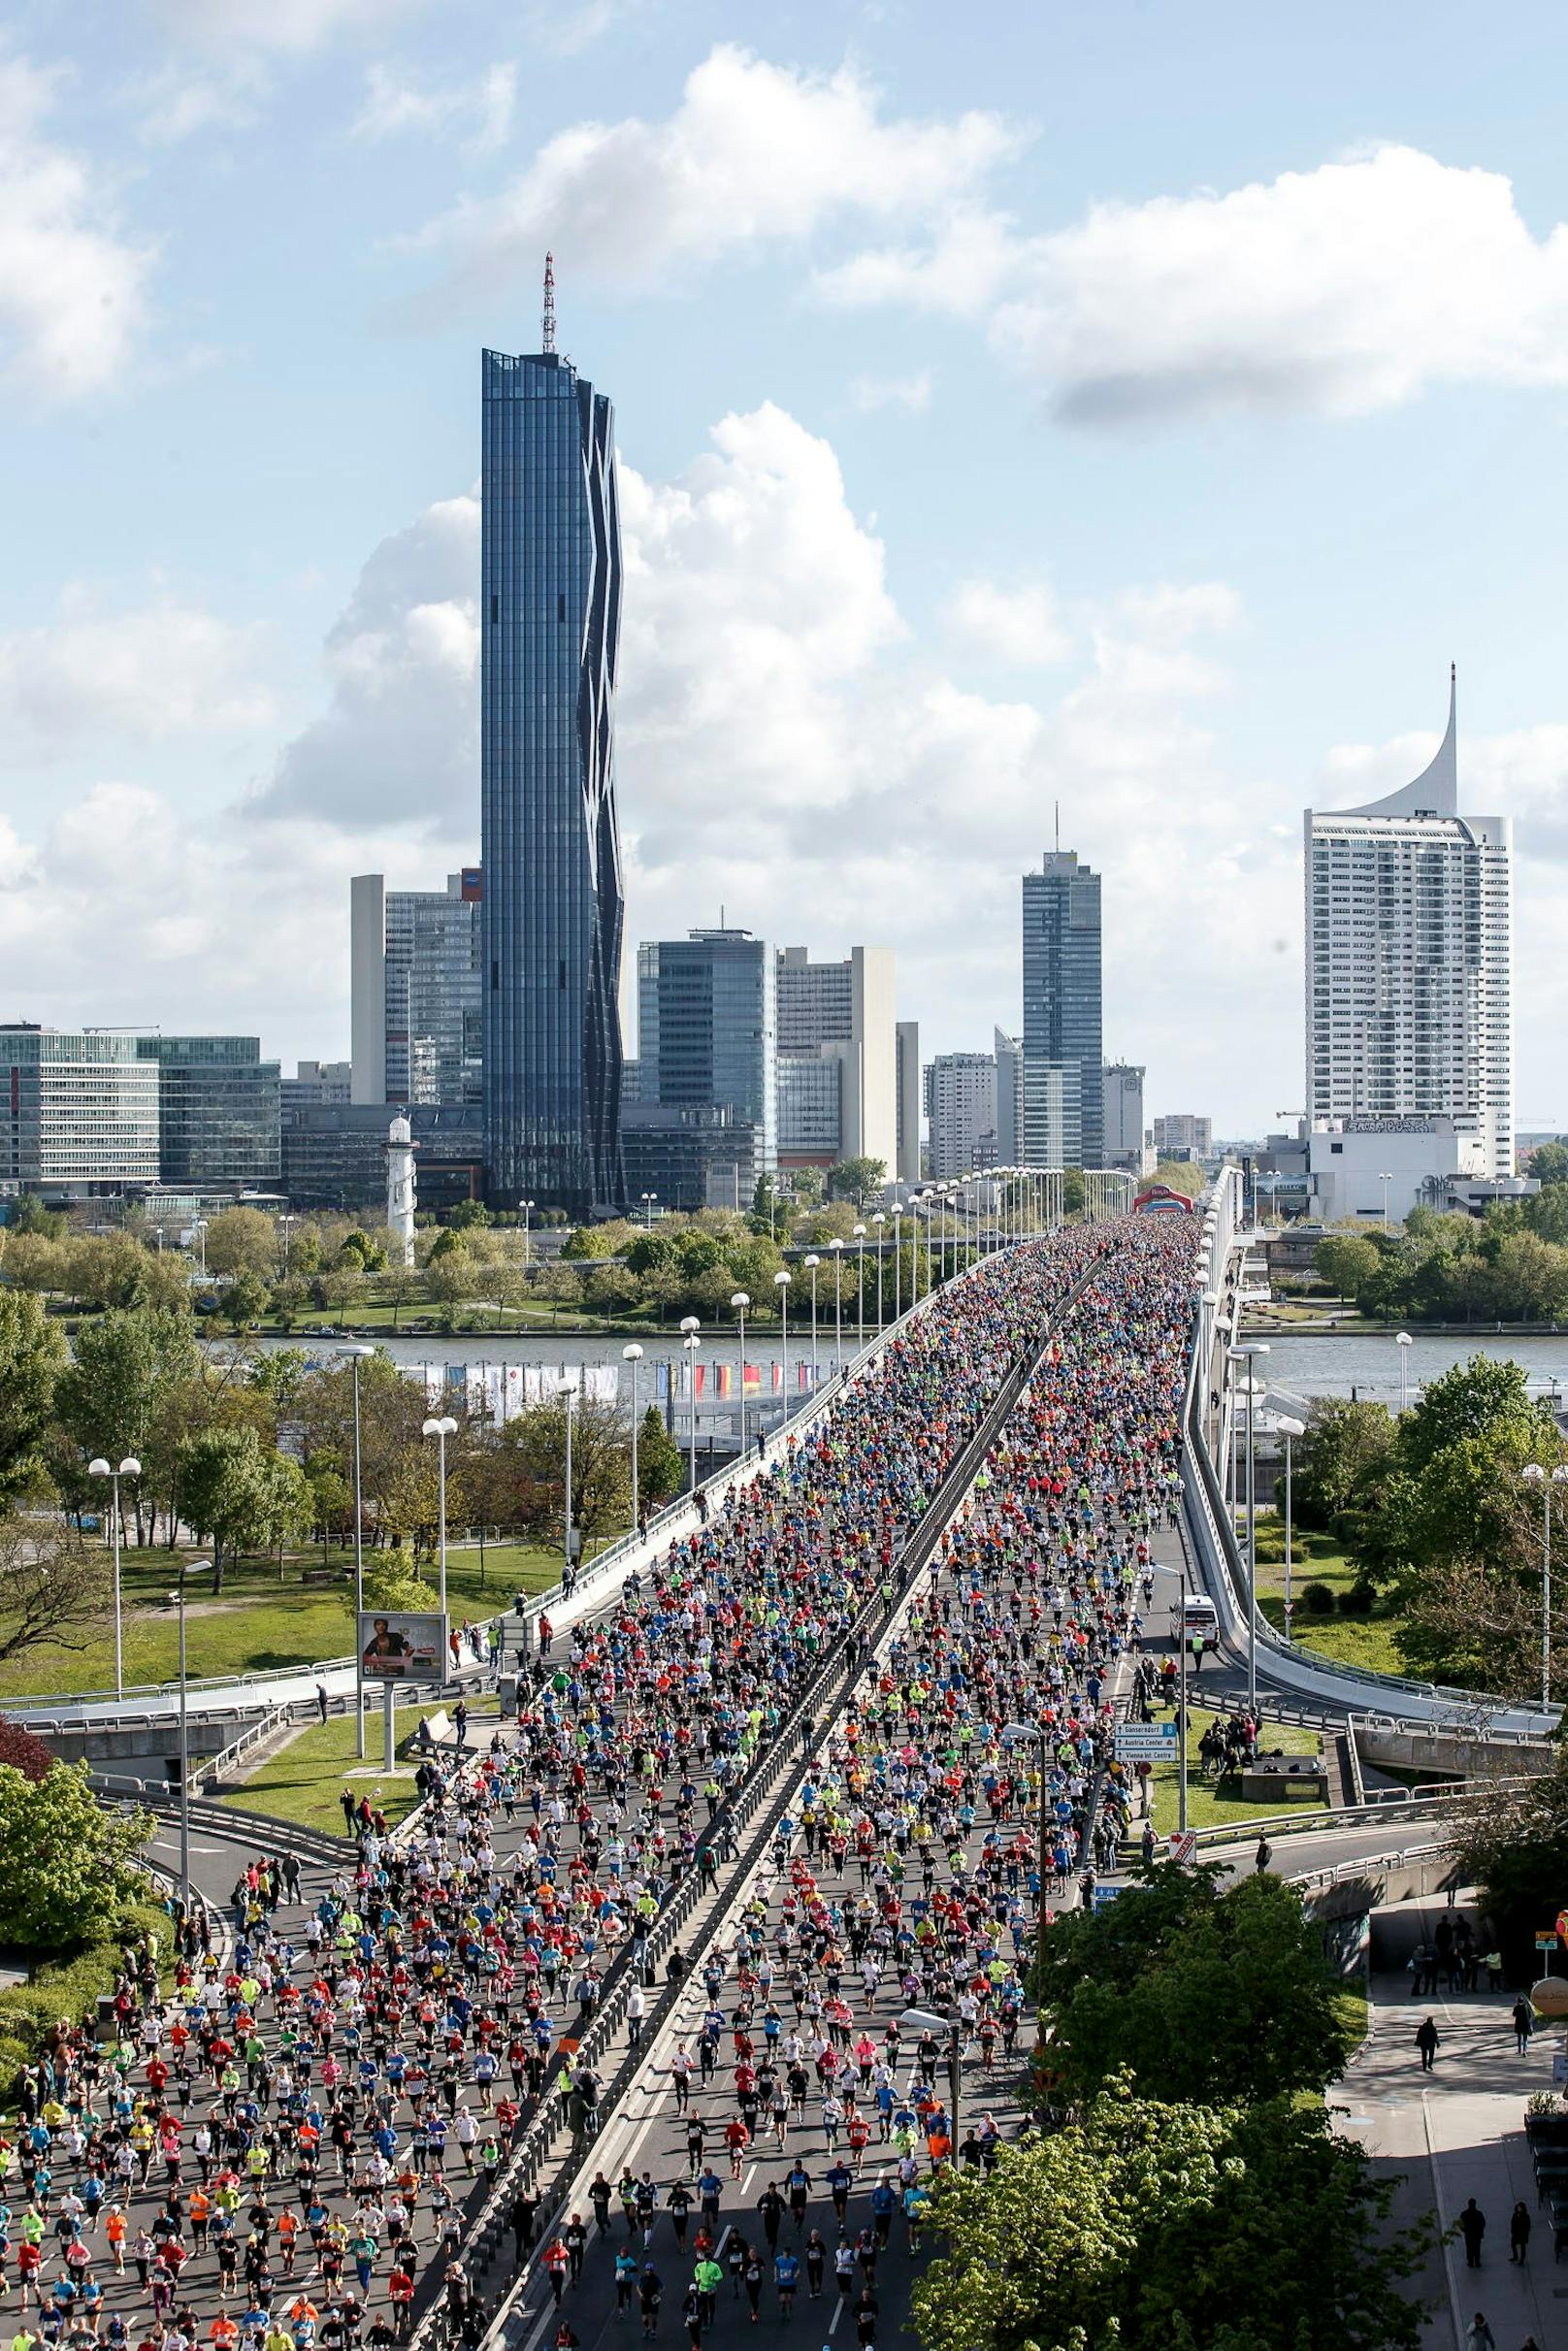 Die Pause ist vorbei, in Wien wird wieder gelaufen: Am Wochenende geht der Vienna City Marathon über die Bühne. Das Bild zeigt den Start eines vergangenen VCM.